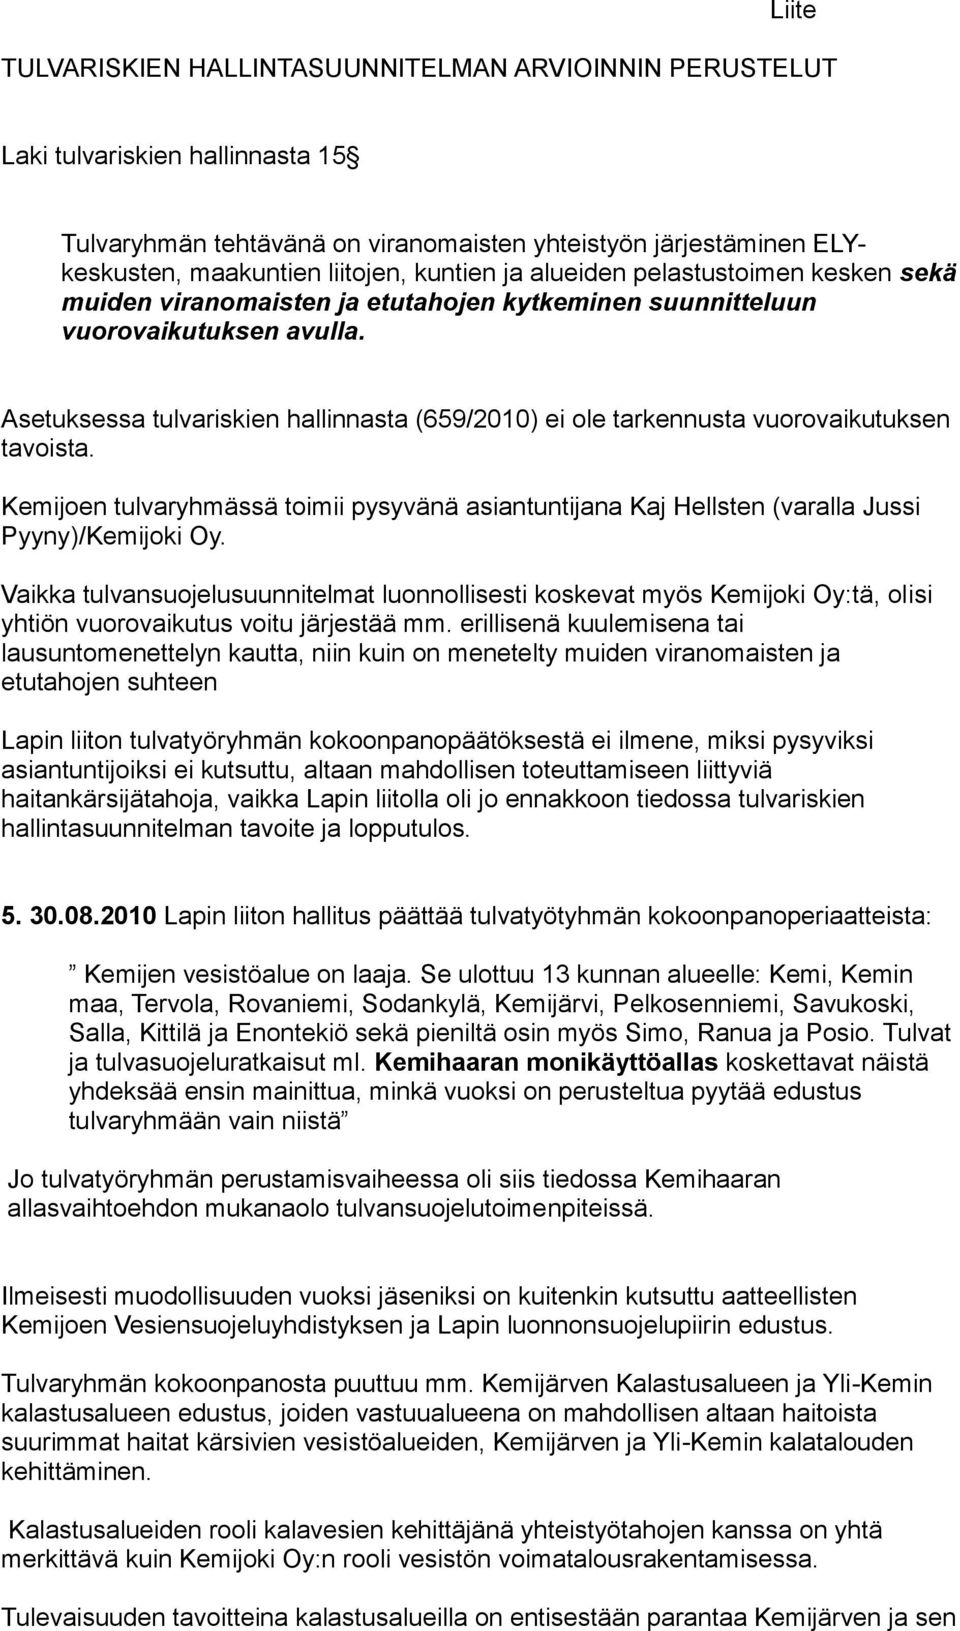 Asetuksessa tulvariskien hallinnasta (659/2010) ei ole tarkennusta vuorovaikutuksen tavoista. Kemijoen tulvaryhmässä toimii pysyvänä asiantuntijana Kaj Hellsten (varalla Jussi Pyyny)/Kemijoki Oy.